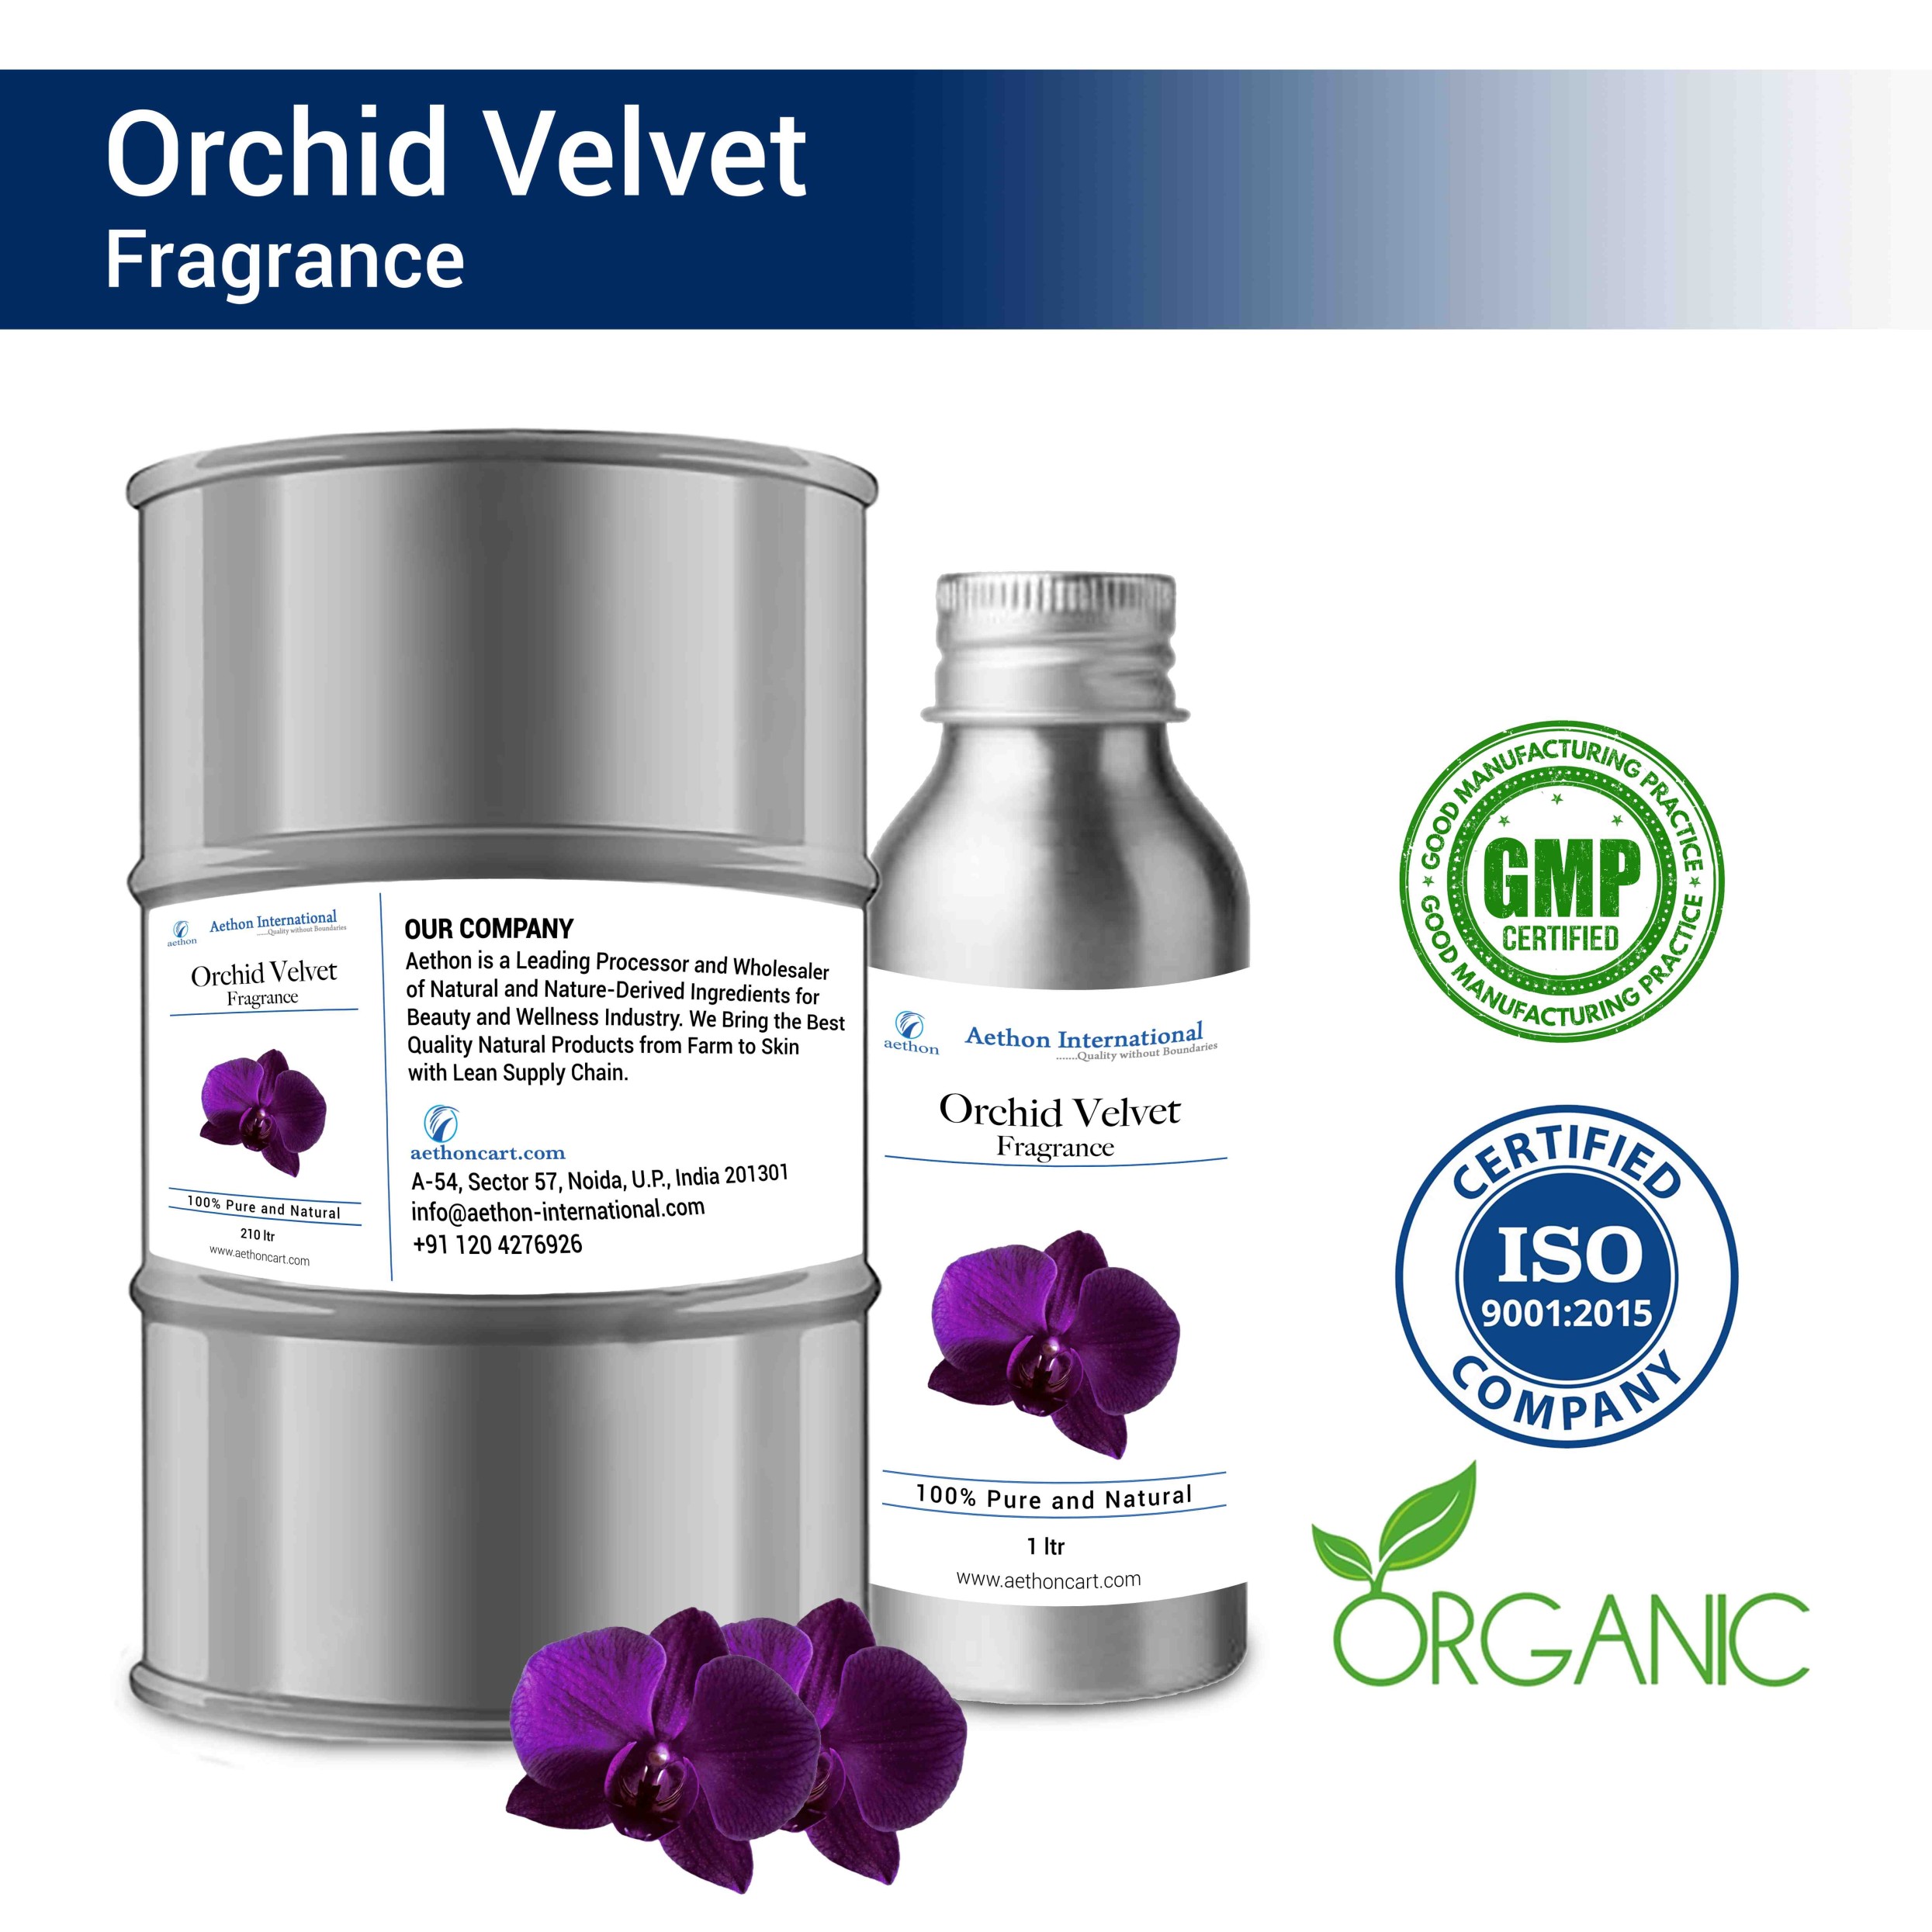 Orchid Velvet Fragrance